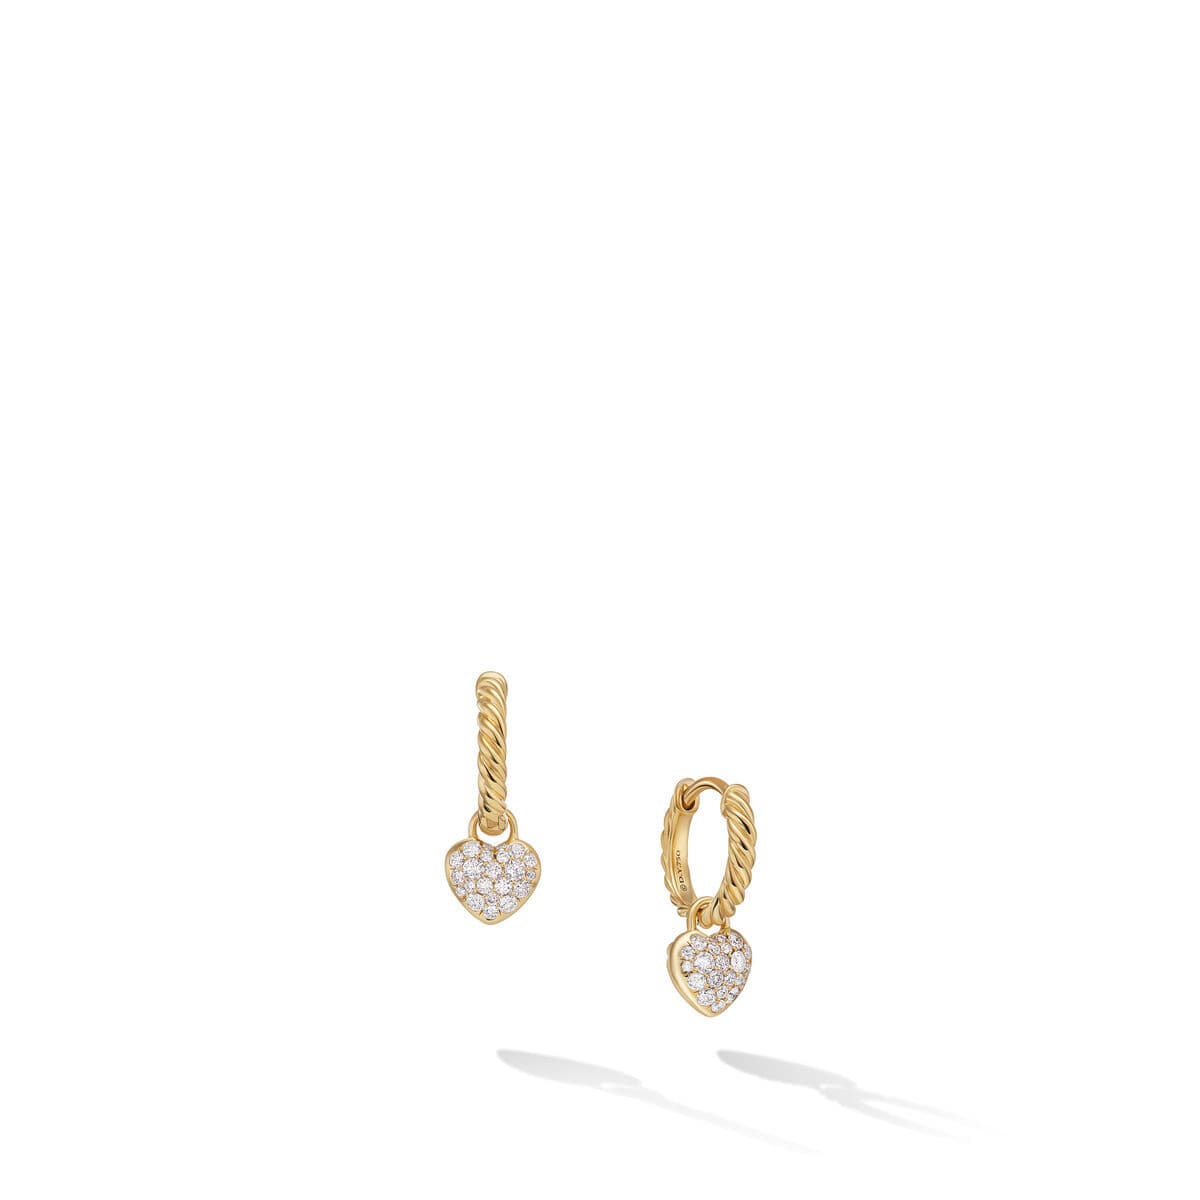 David Yurman Petite Interchangeable Pavé Heart Drop Earrings in 18K Yellow Gold with Diamonds